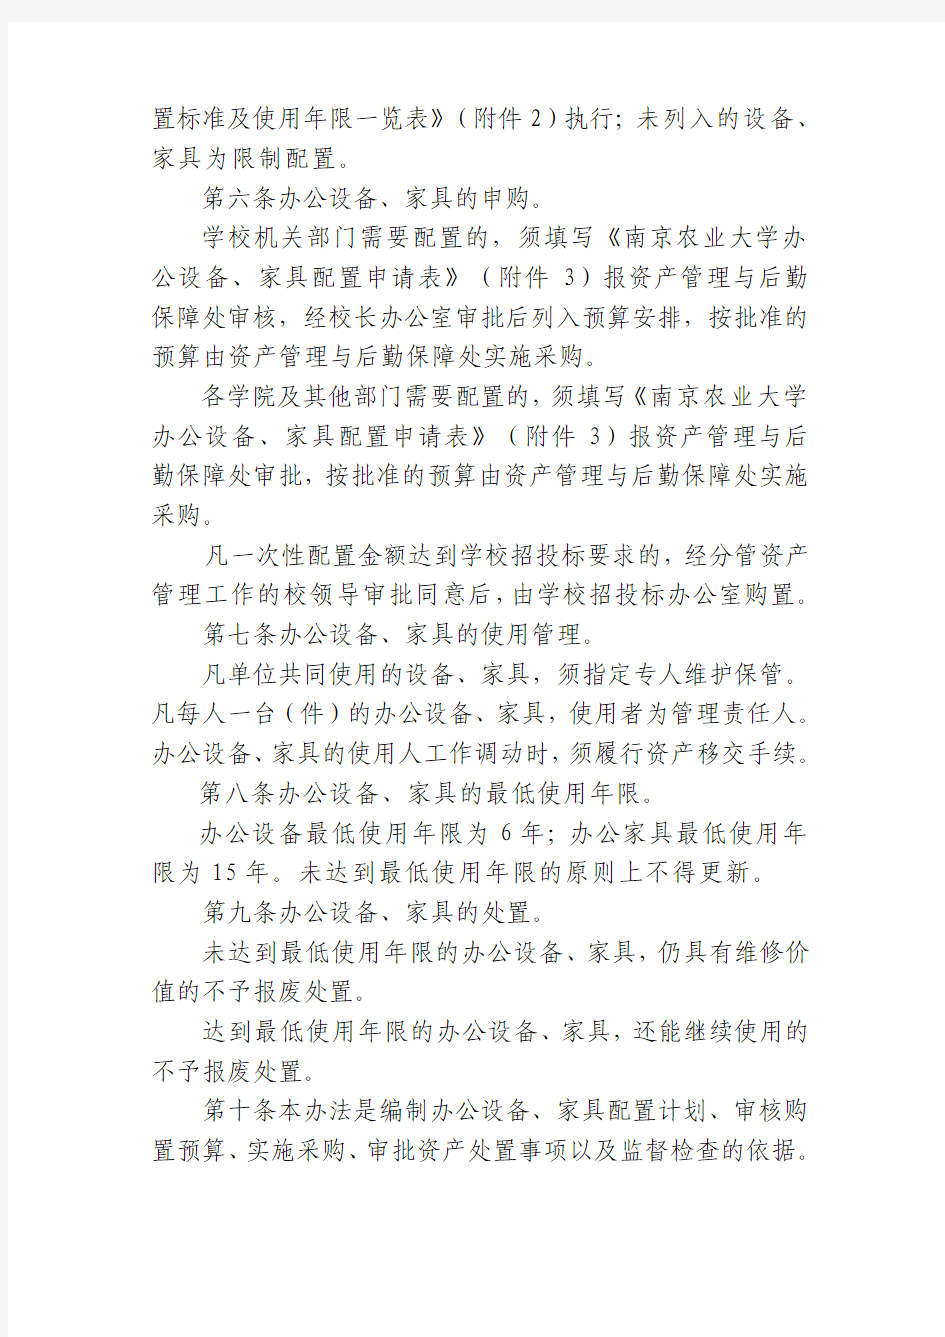 南京农业大学办公设备、家具配置管理办法(试行)